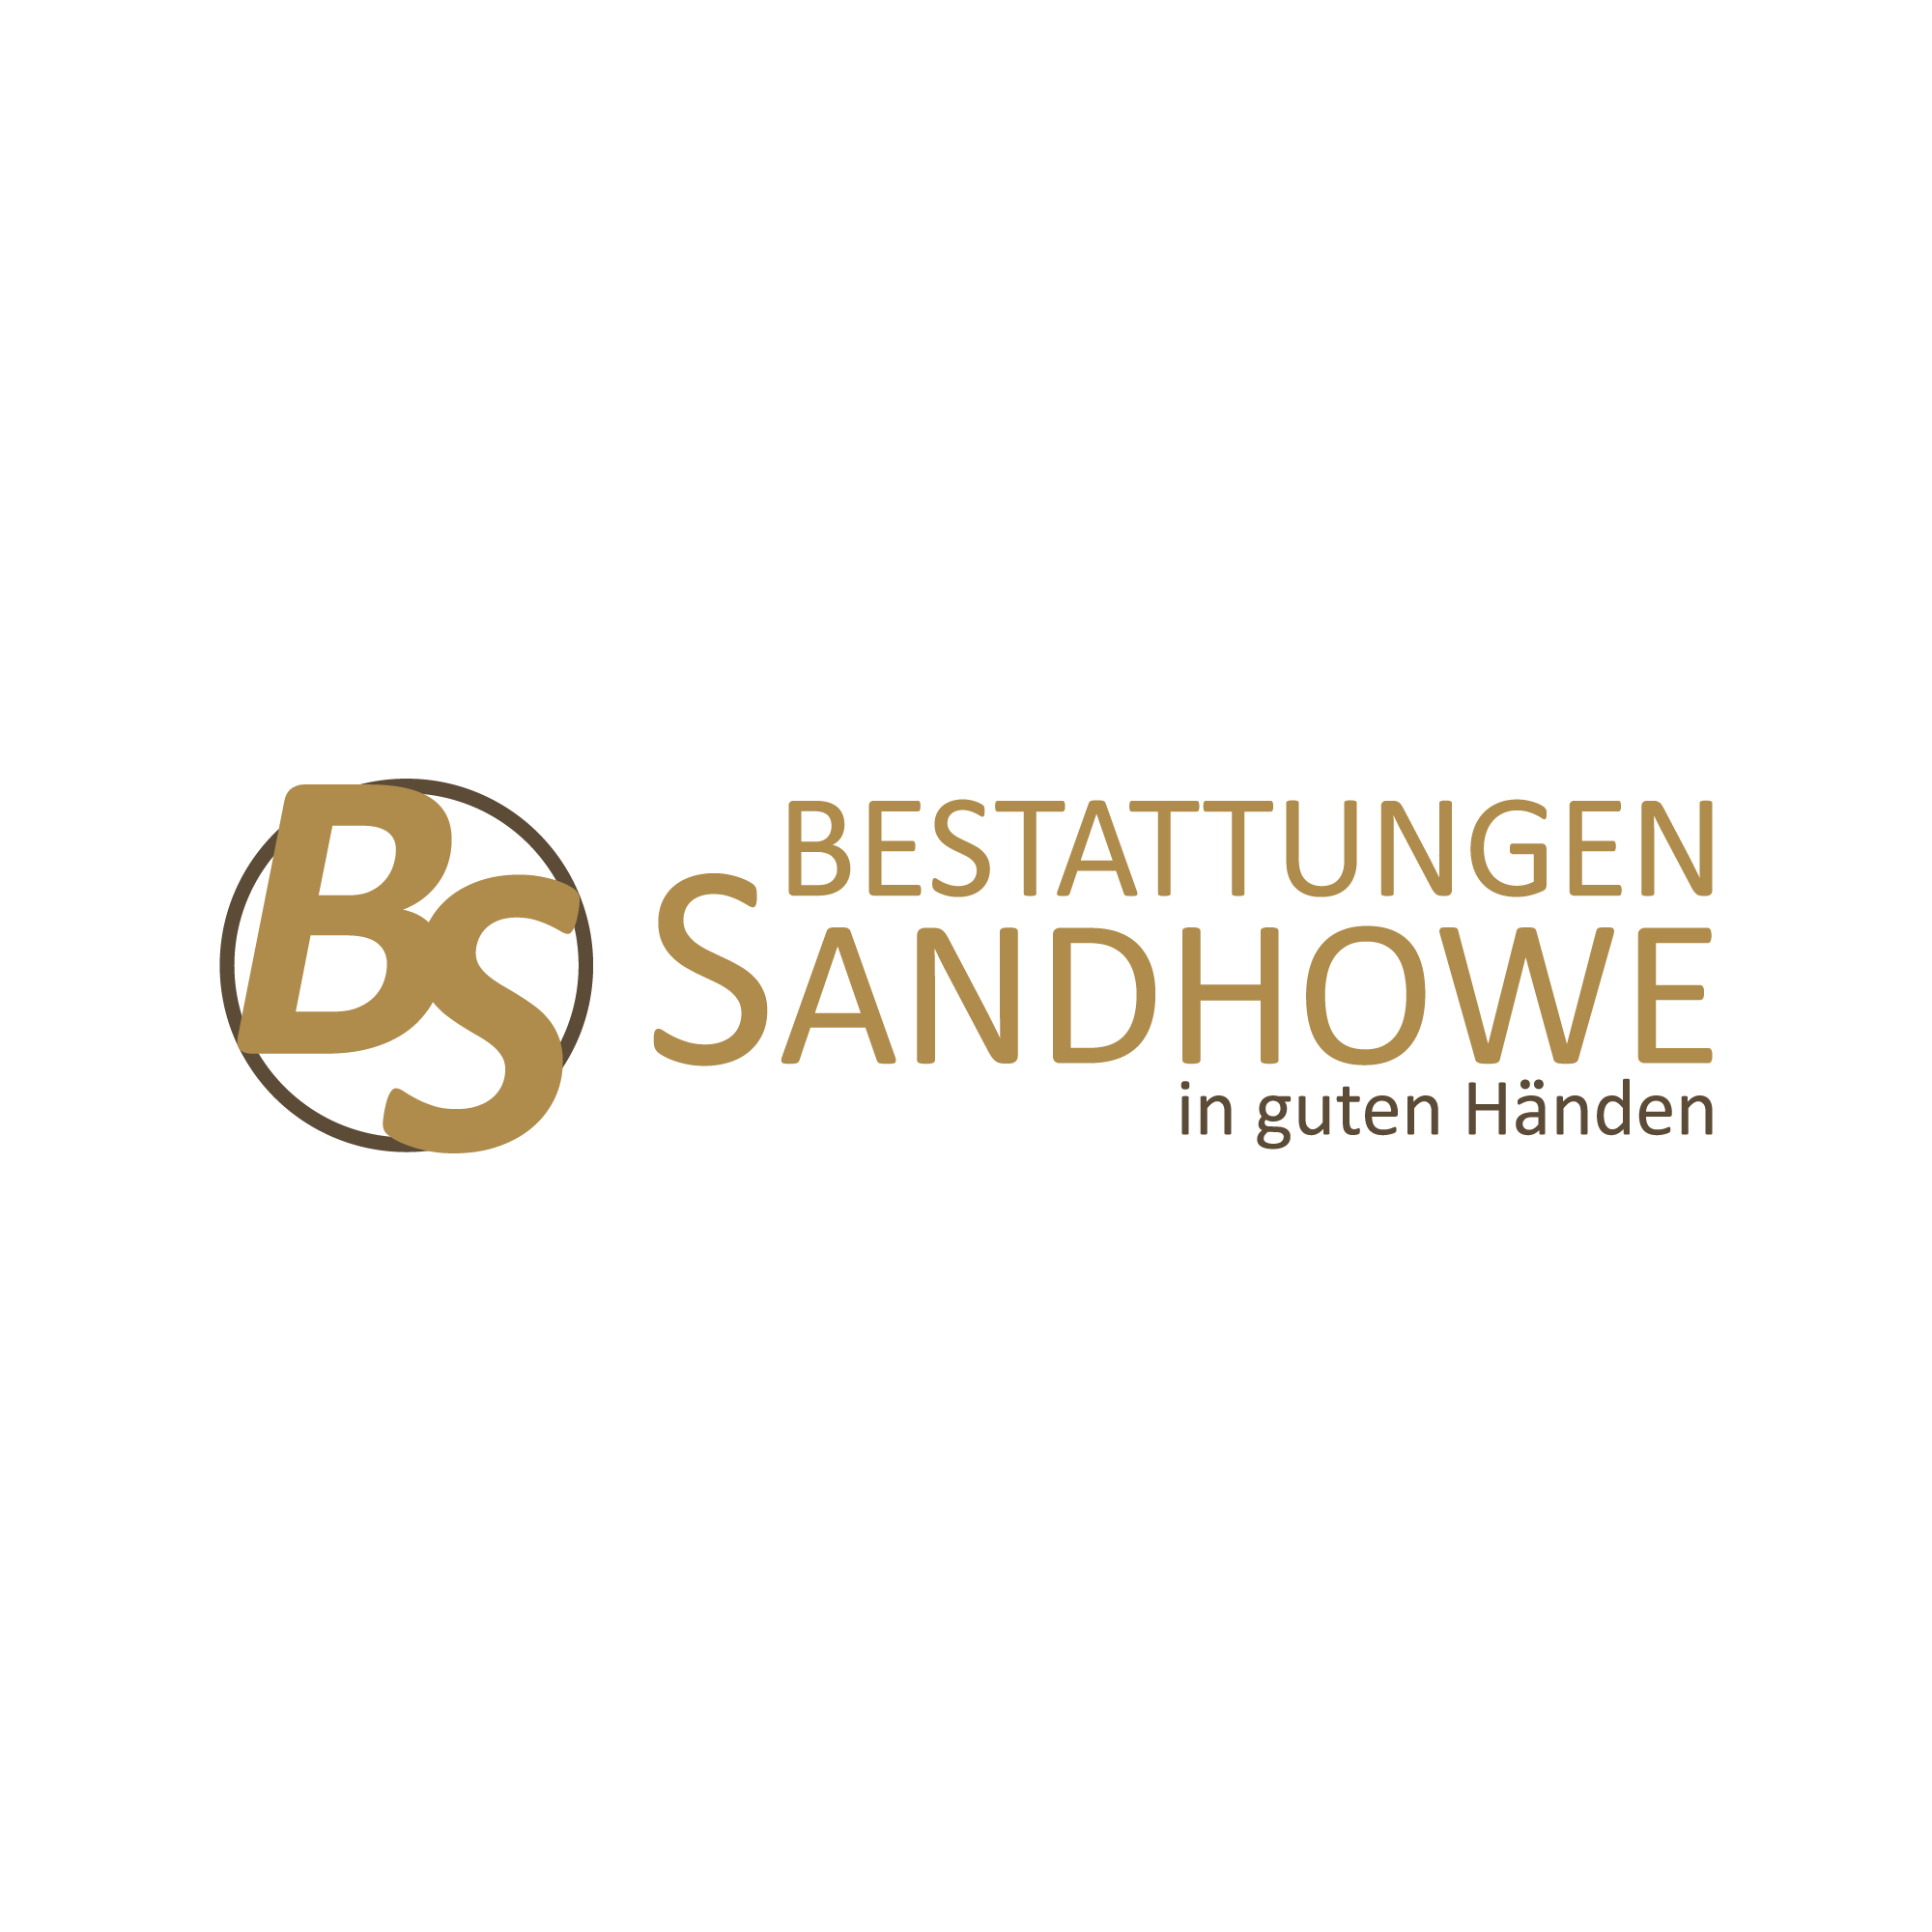 Bestattungen Sandhowe Inh. Bettina Sandhowe in Berlin - Logo